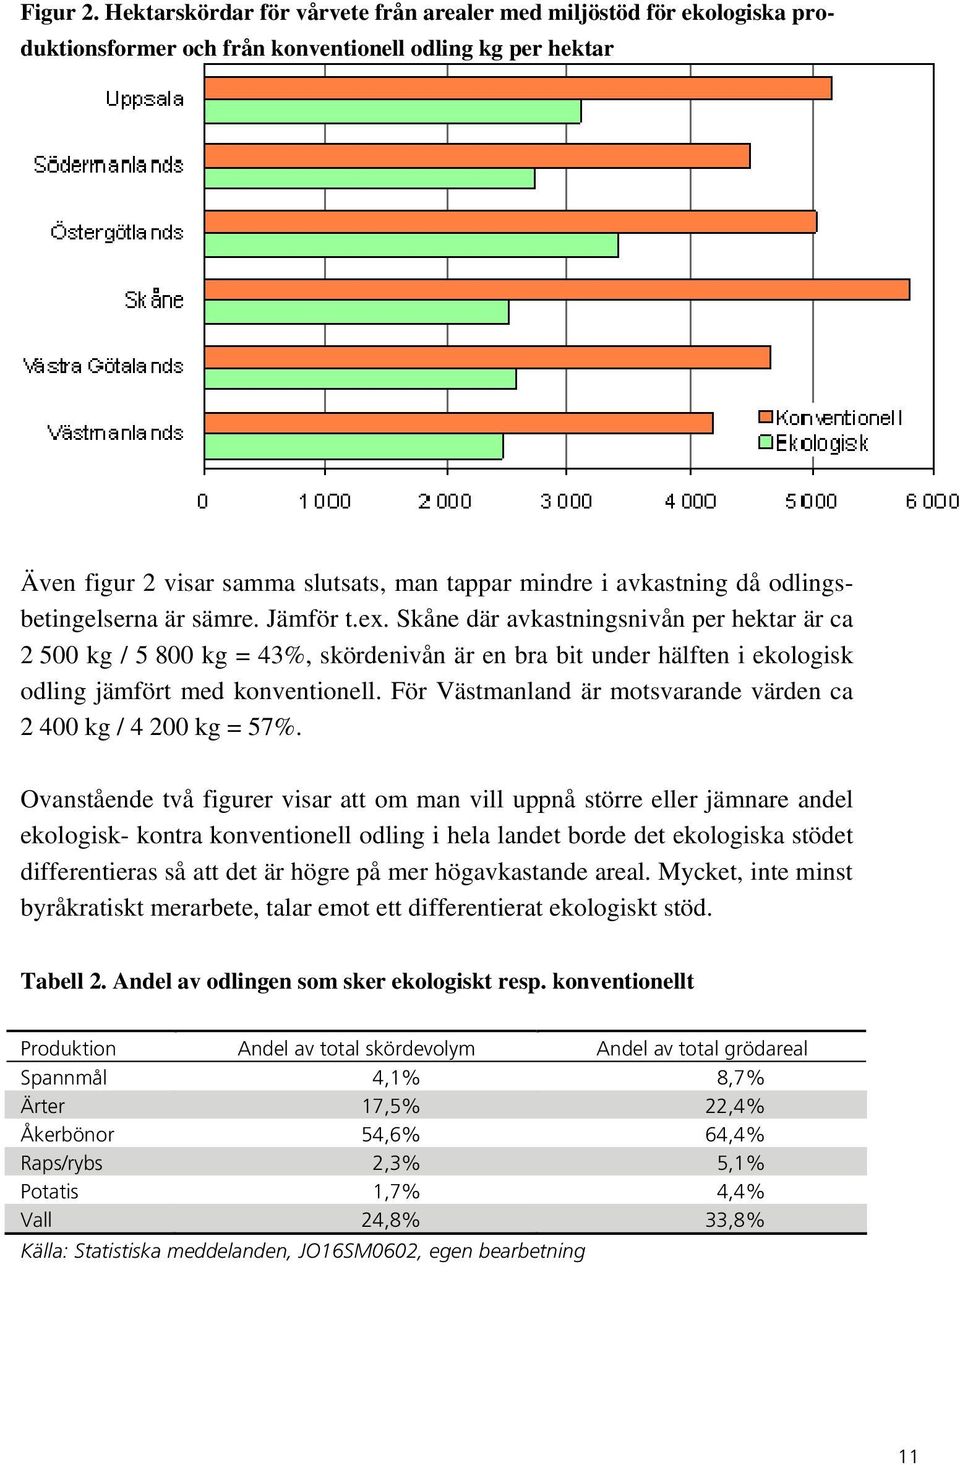 odlingsbetingelserna är sämre. Jämför t.ex. Skåne där avkastningsnivån per hektar är ca 2 500 kg / 5 800 kg = 43%, skördenivån är en bra bit under hälften i ekologisk odling jämfört med konventionell.